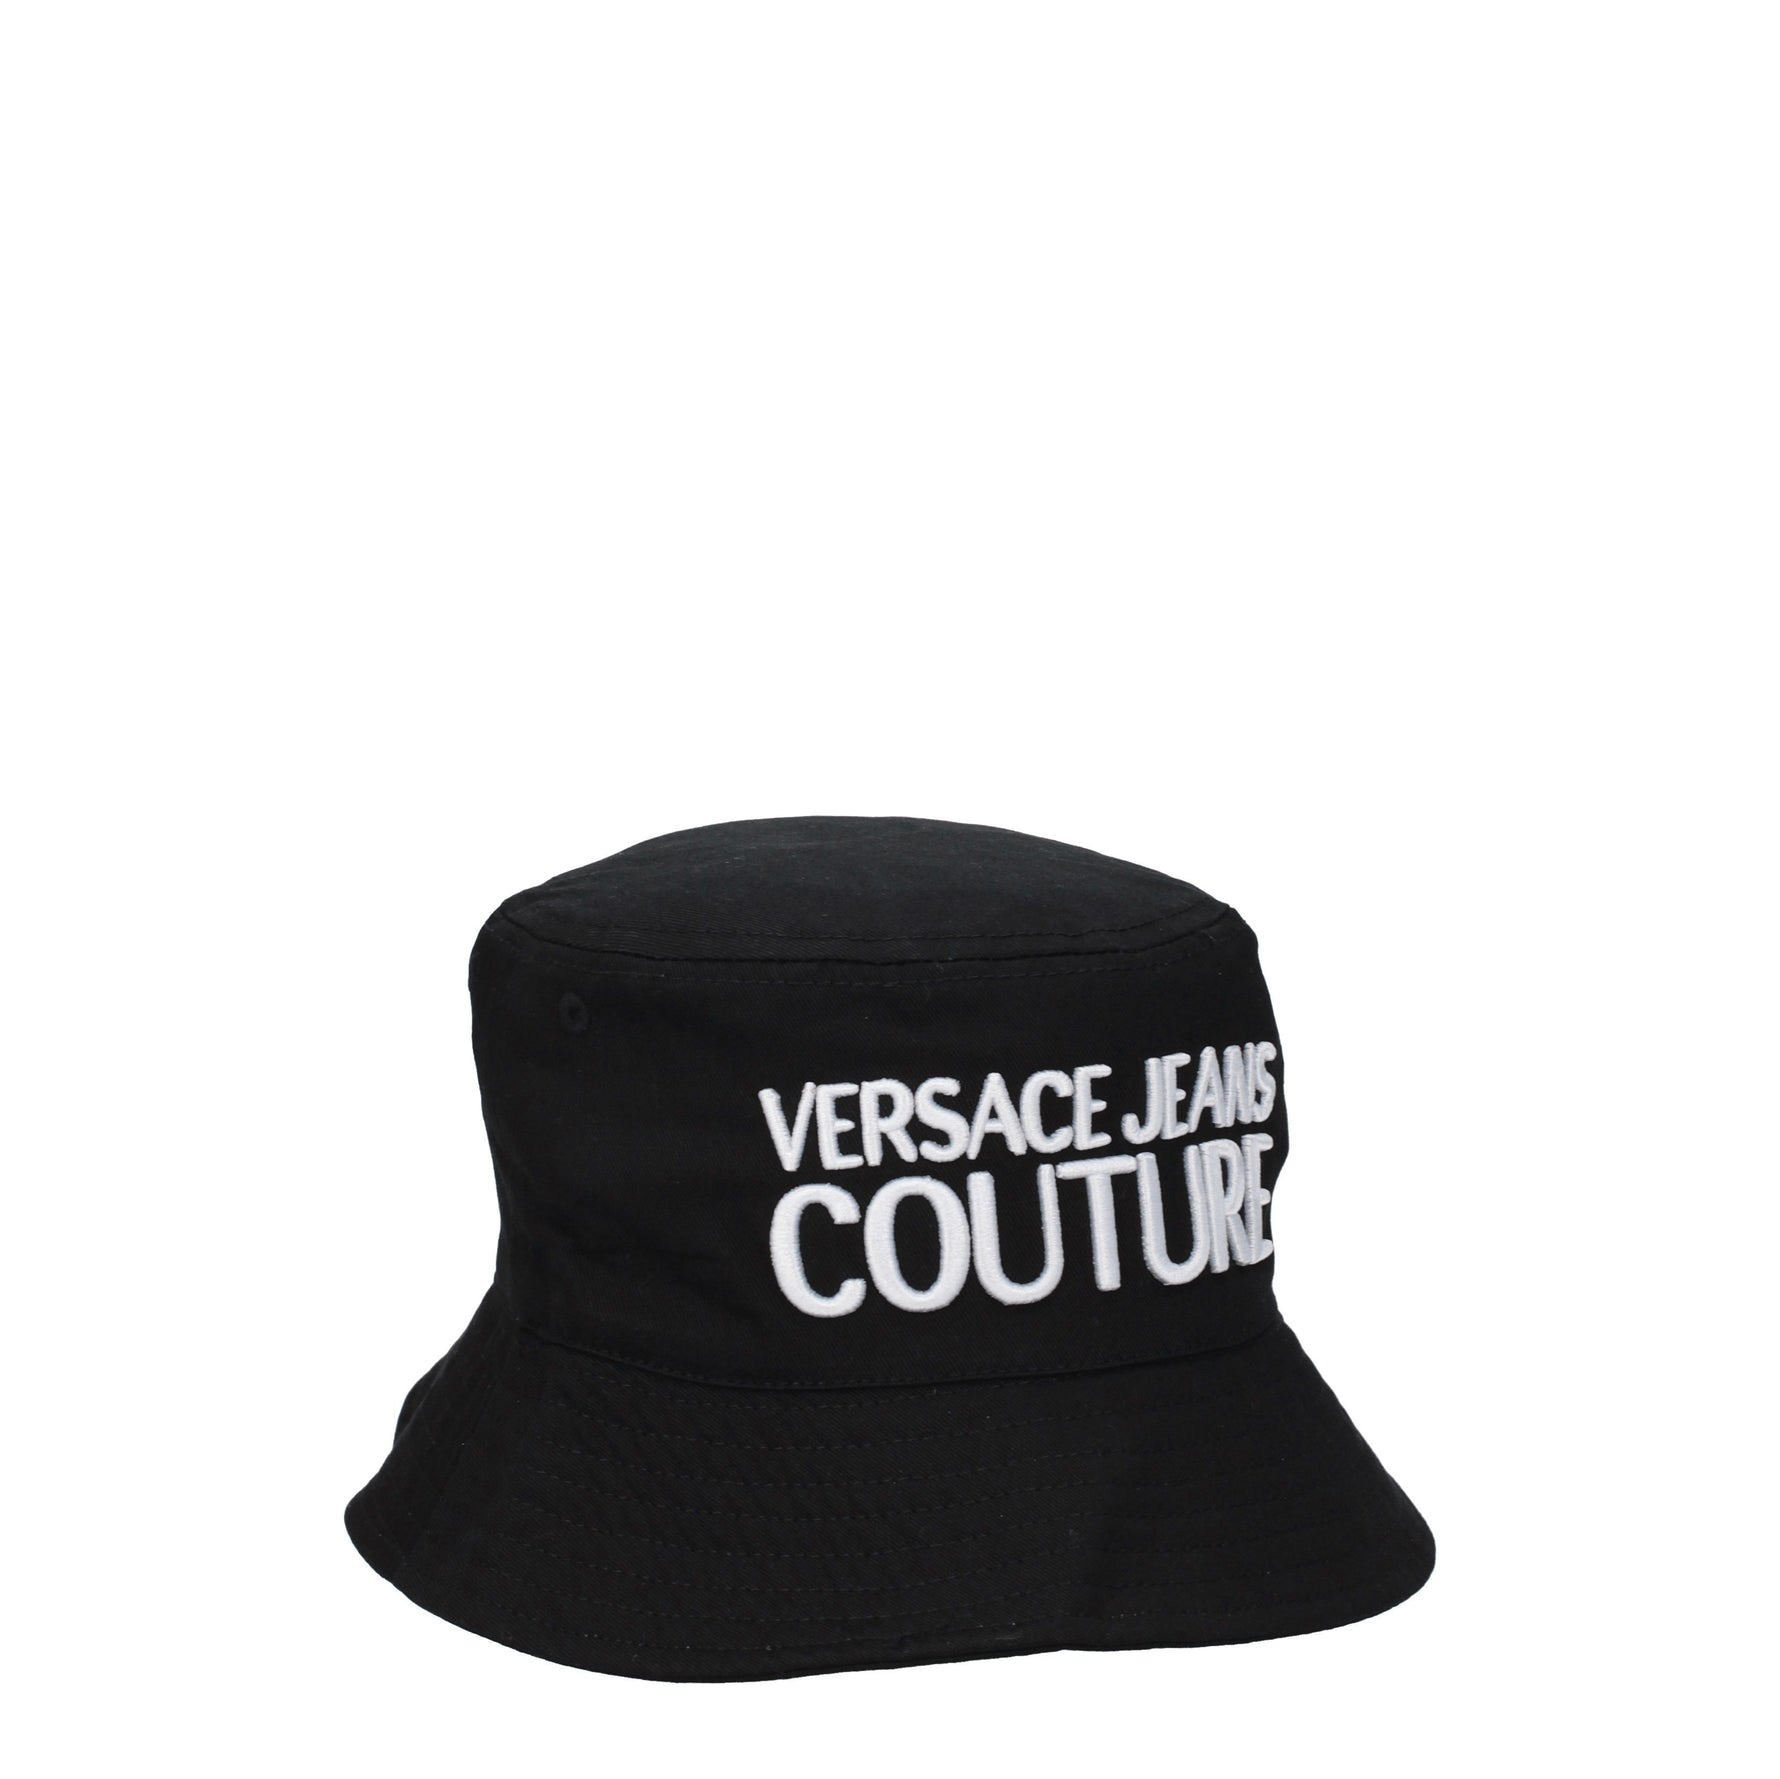 Versace Jeans Cappelli couture Uomo Cotone Nero